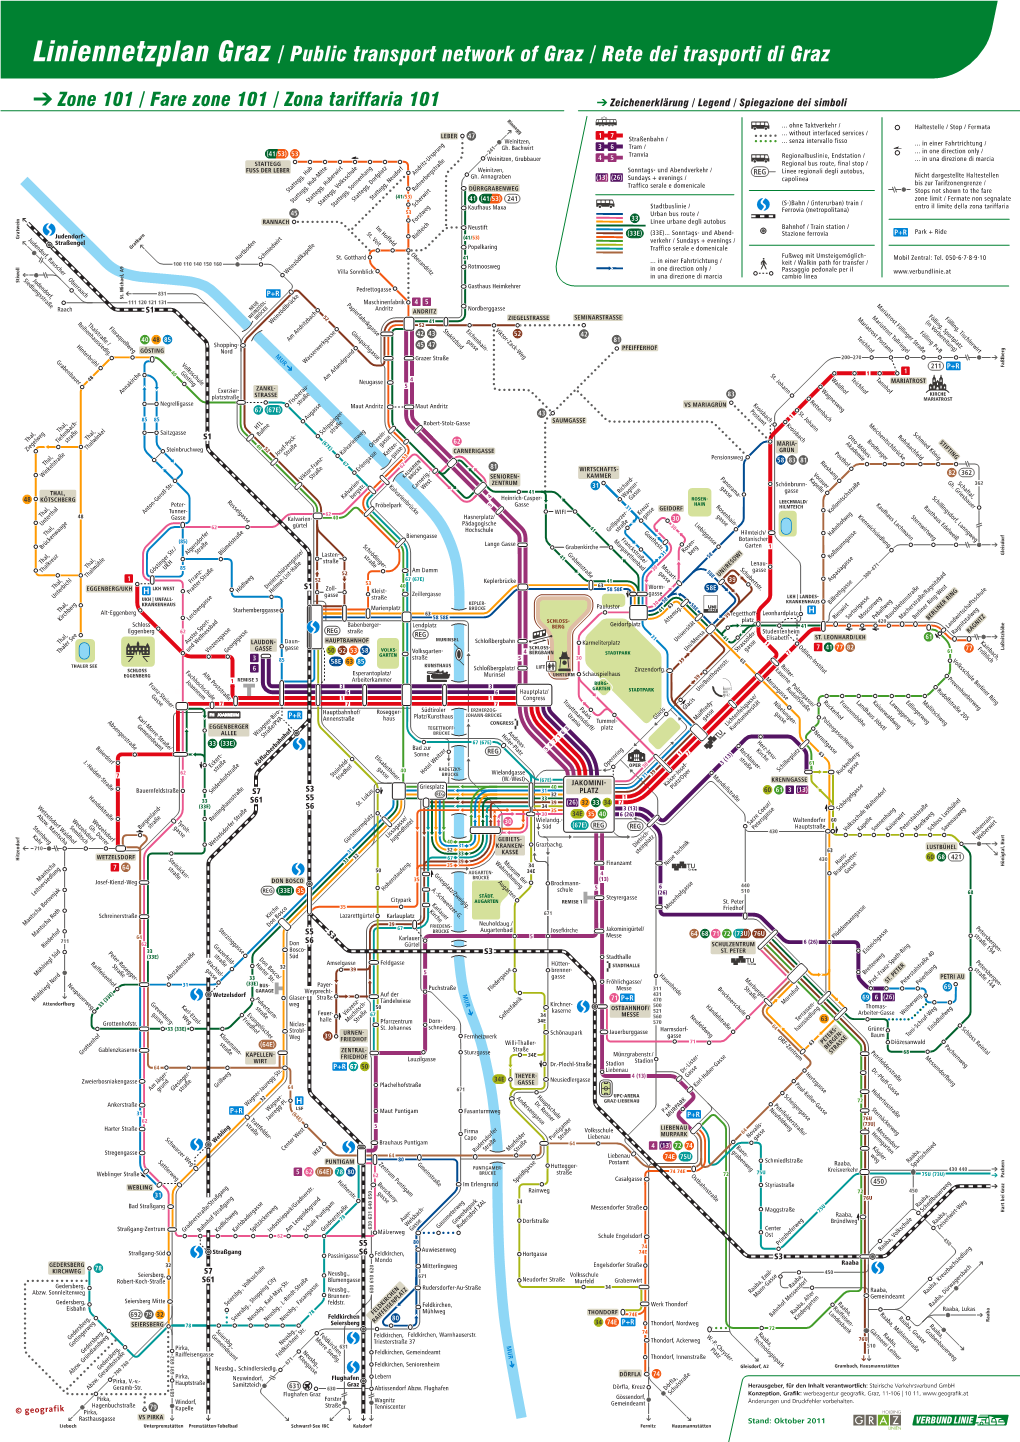 Liniennetzplan Graz / Public Transport Network of Graz / Rete Dei Trasporti Di Graz